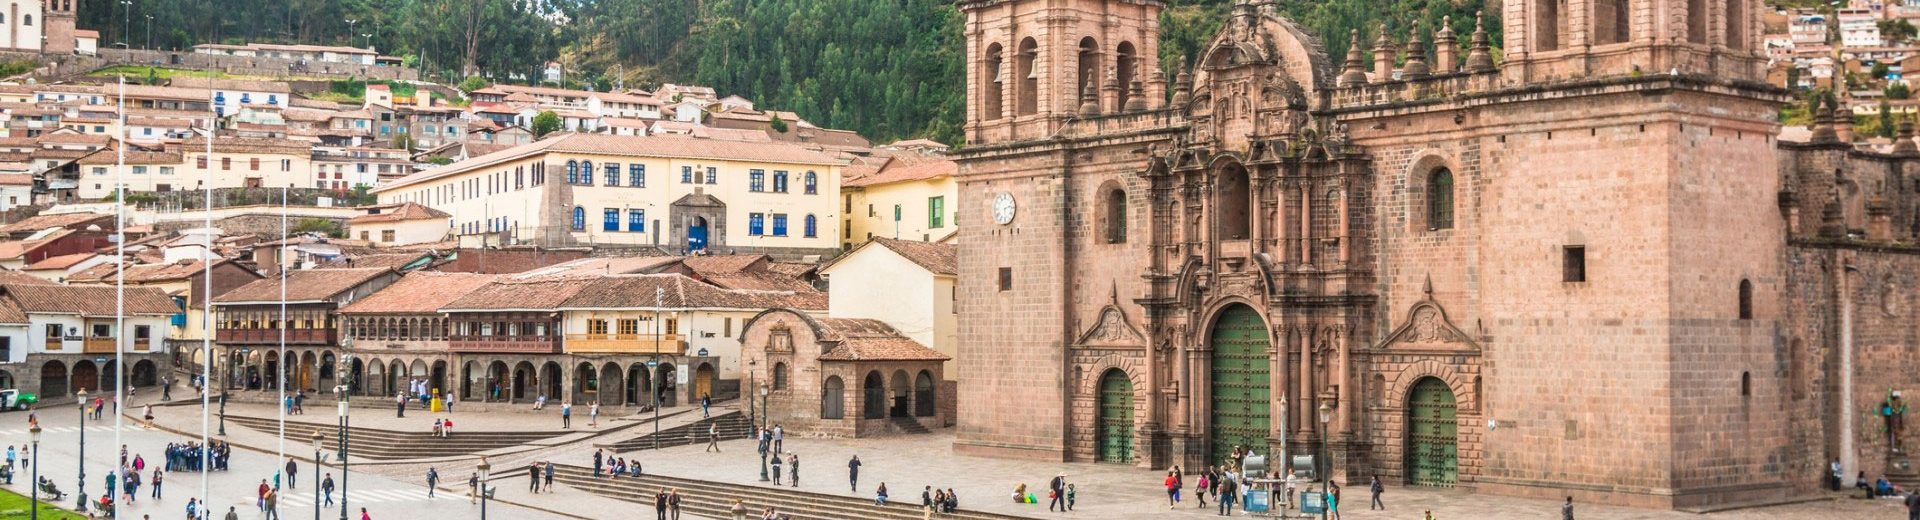 Pacote para Cusco: Um destino surreal no Peru